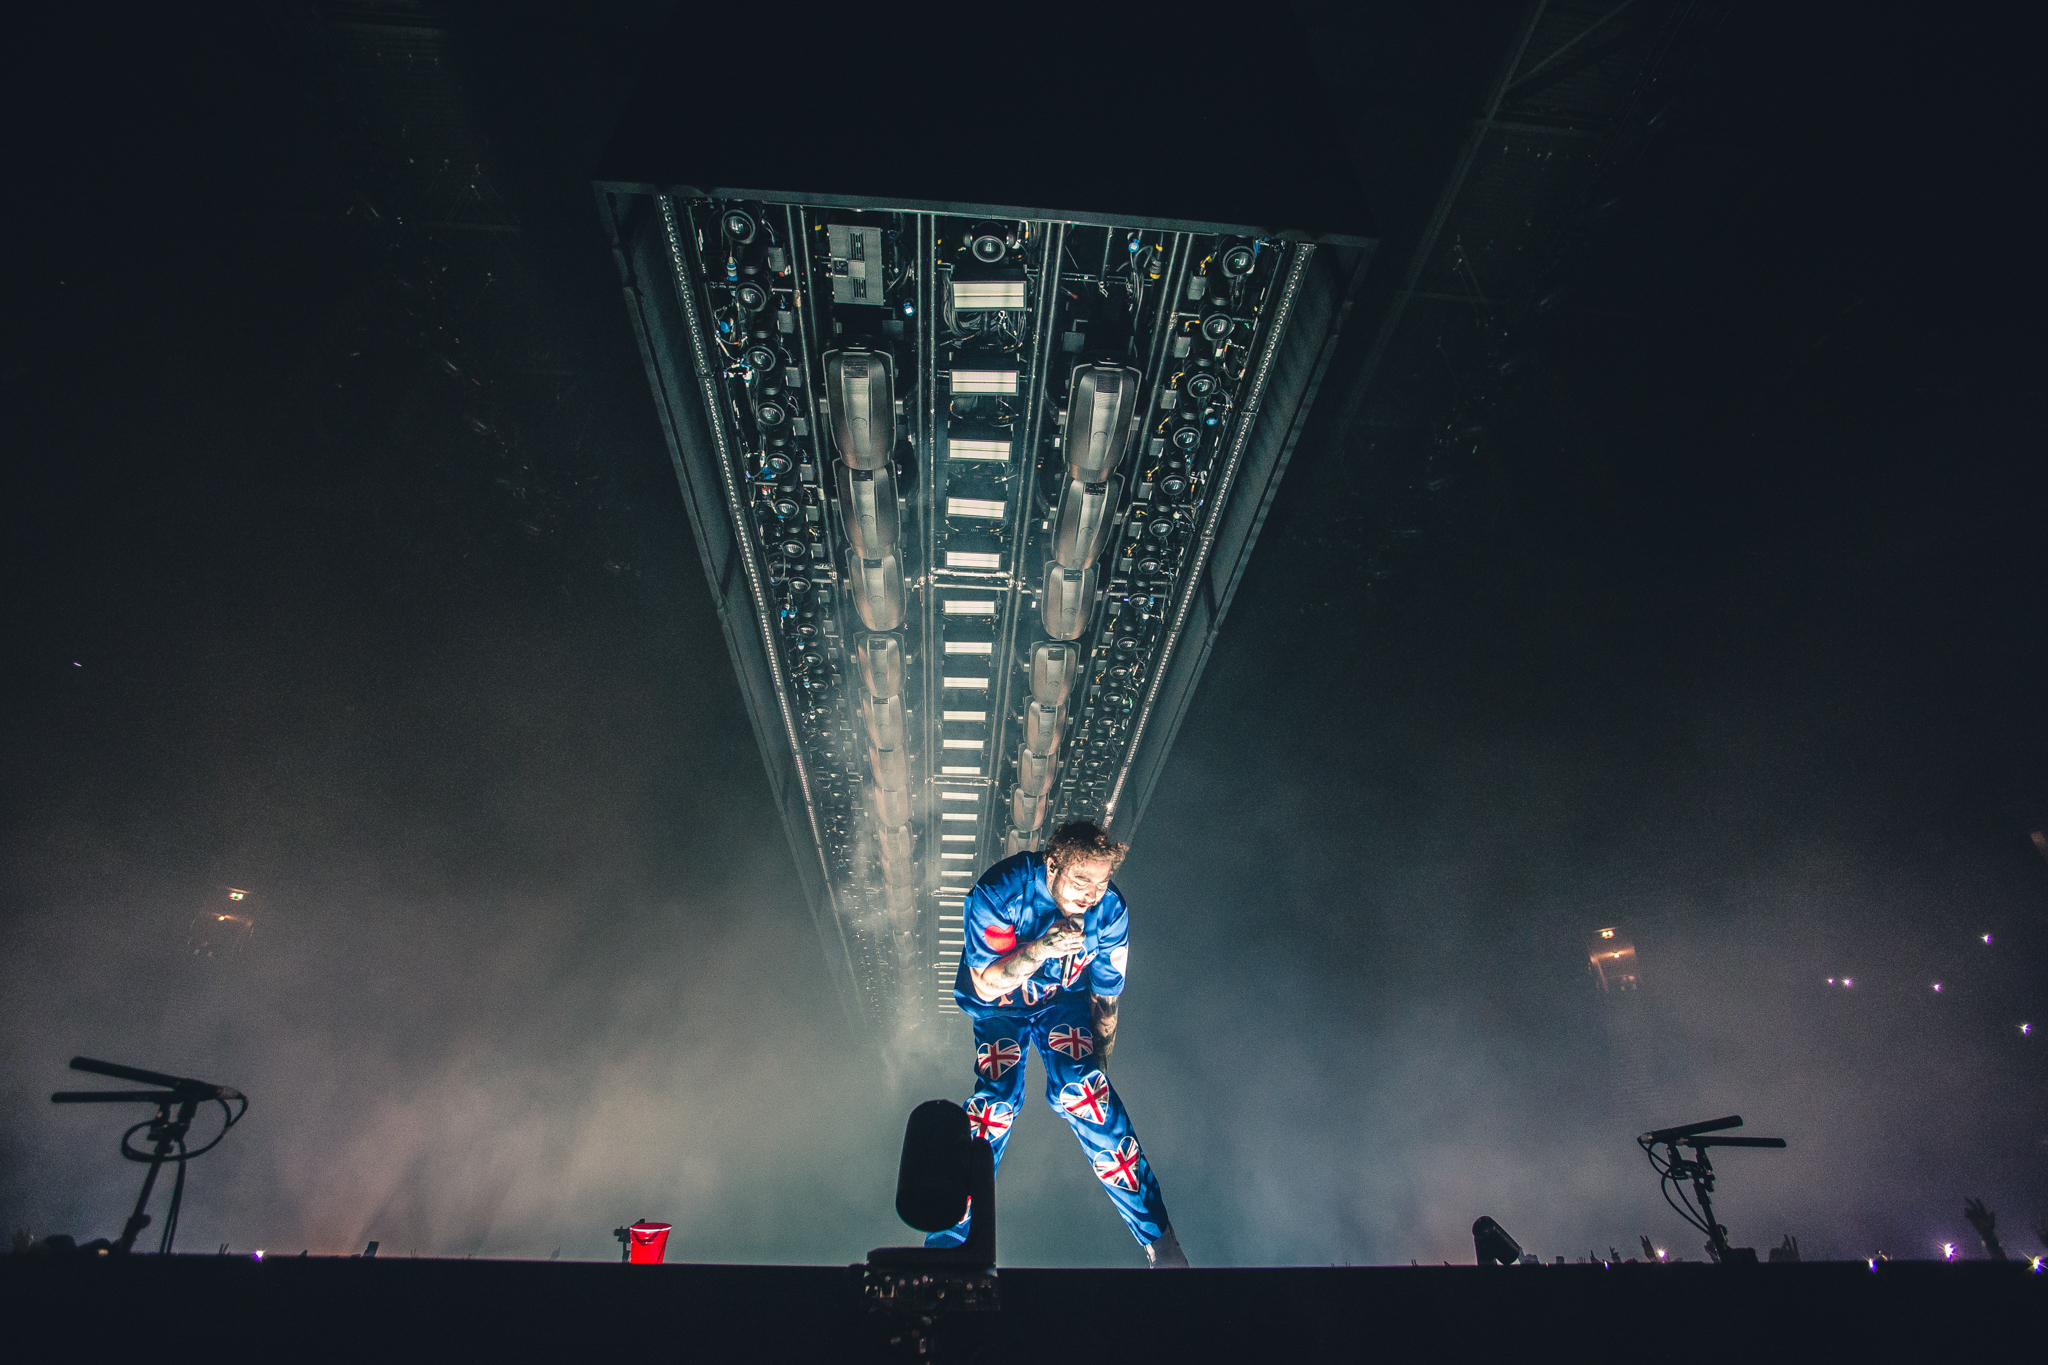 Post Malone, US-amerikanischer Rapper, der eigentlich Austin Richard Post heißt, performt bei seinem Auftritt in der Manchester Arena im Rahmen seiner UK-Tour 2019